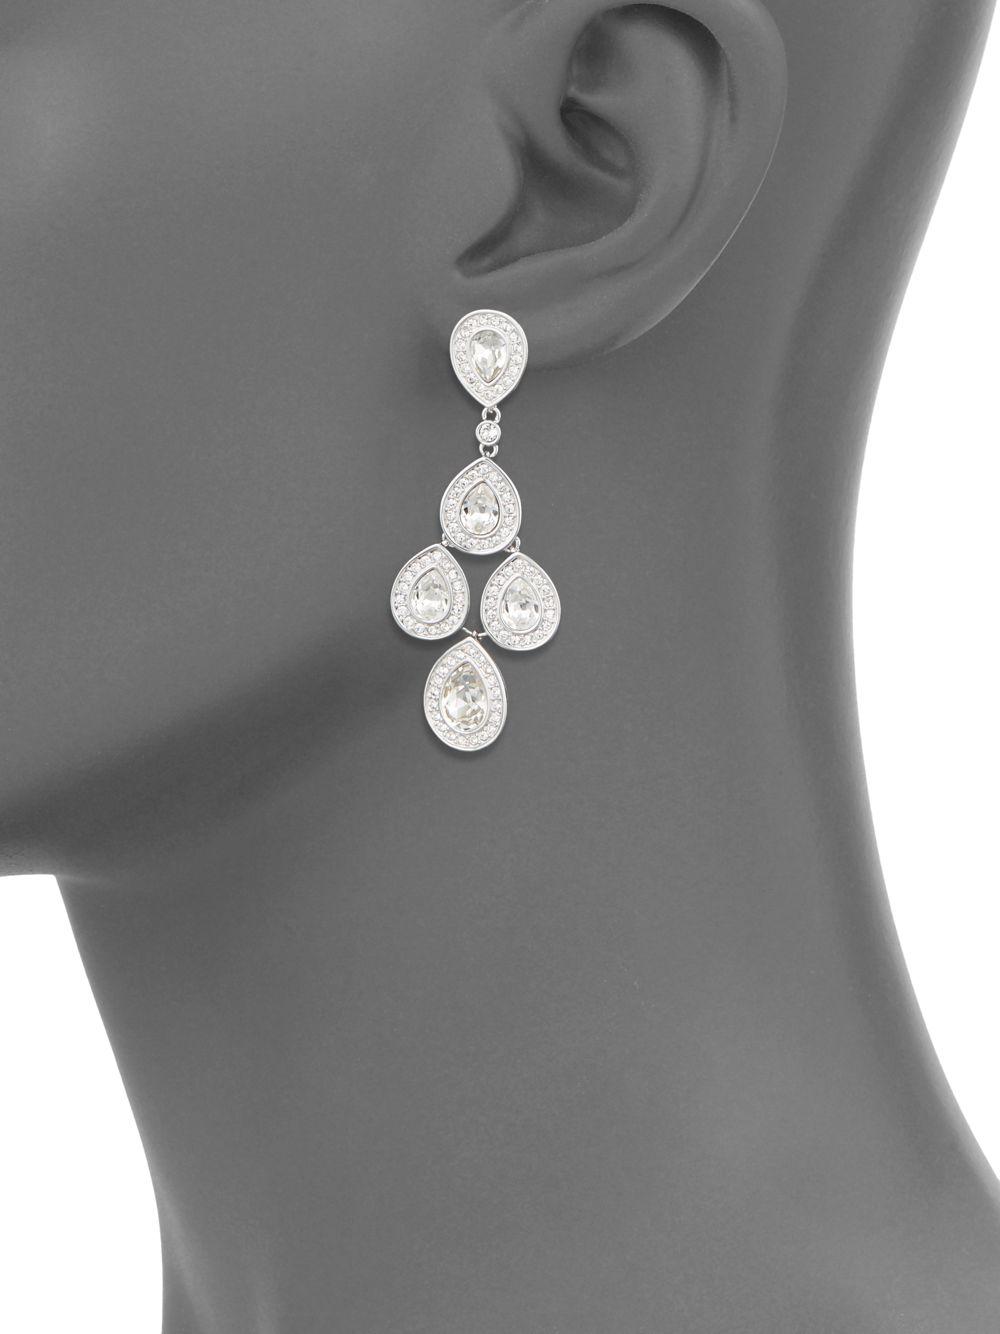 Long Crystal Earrings Elegant Earrings Clear Crystal Earrings Flower Earrings Quatrefoil Earrings Antique Silver Chandelier Earrings